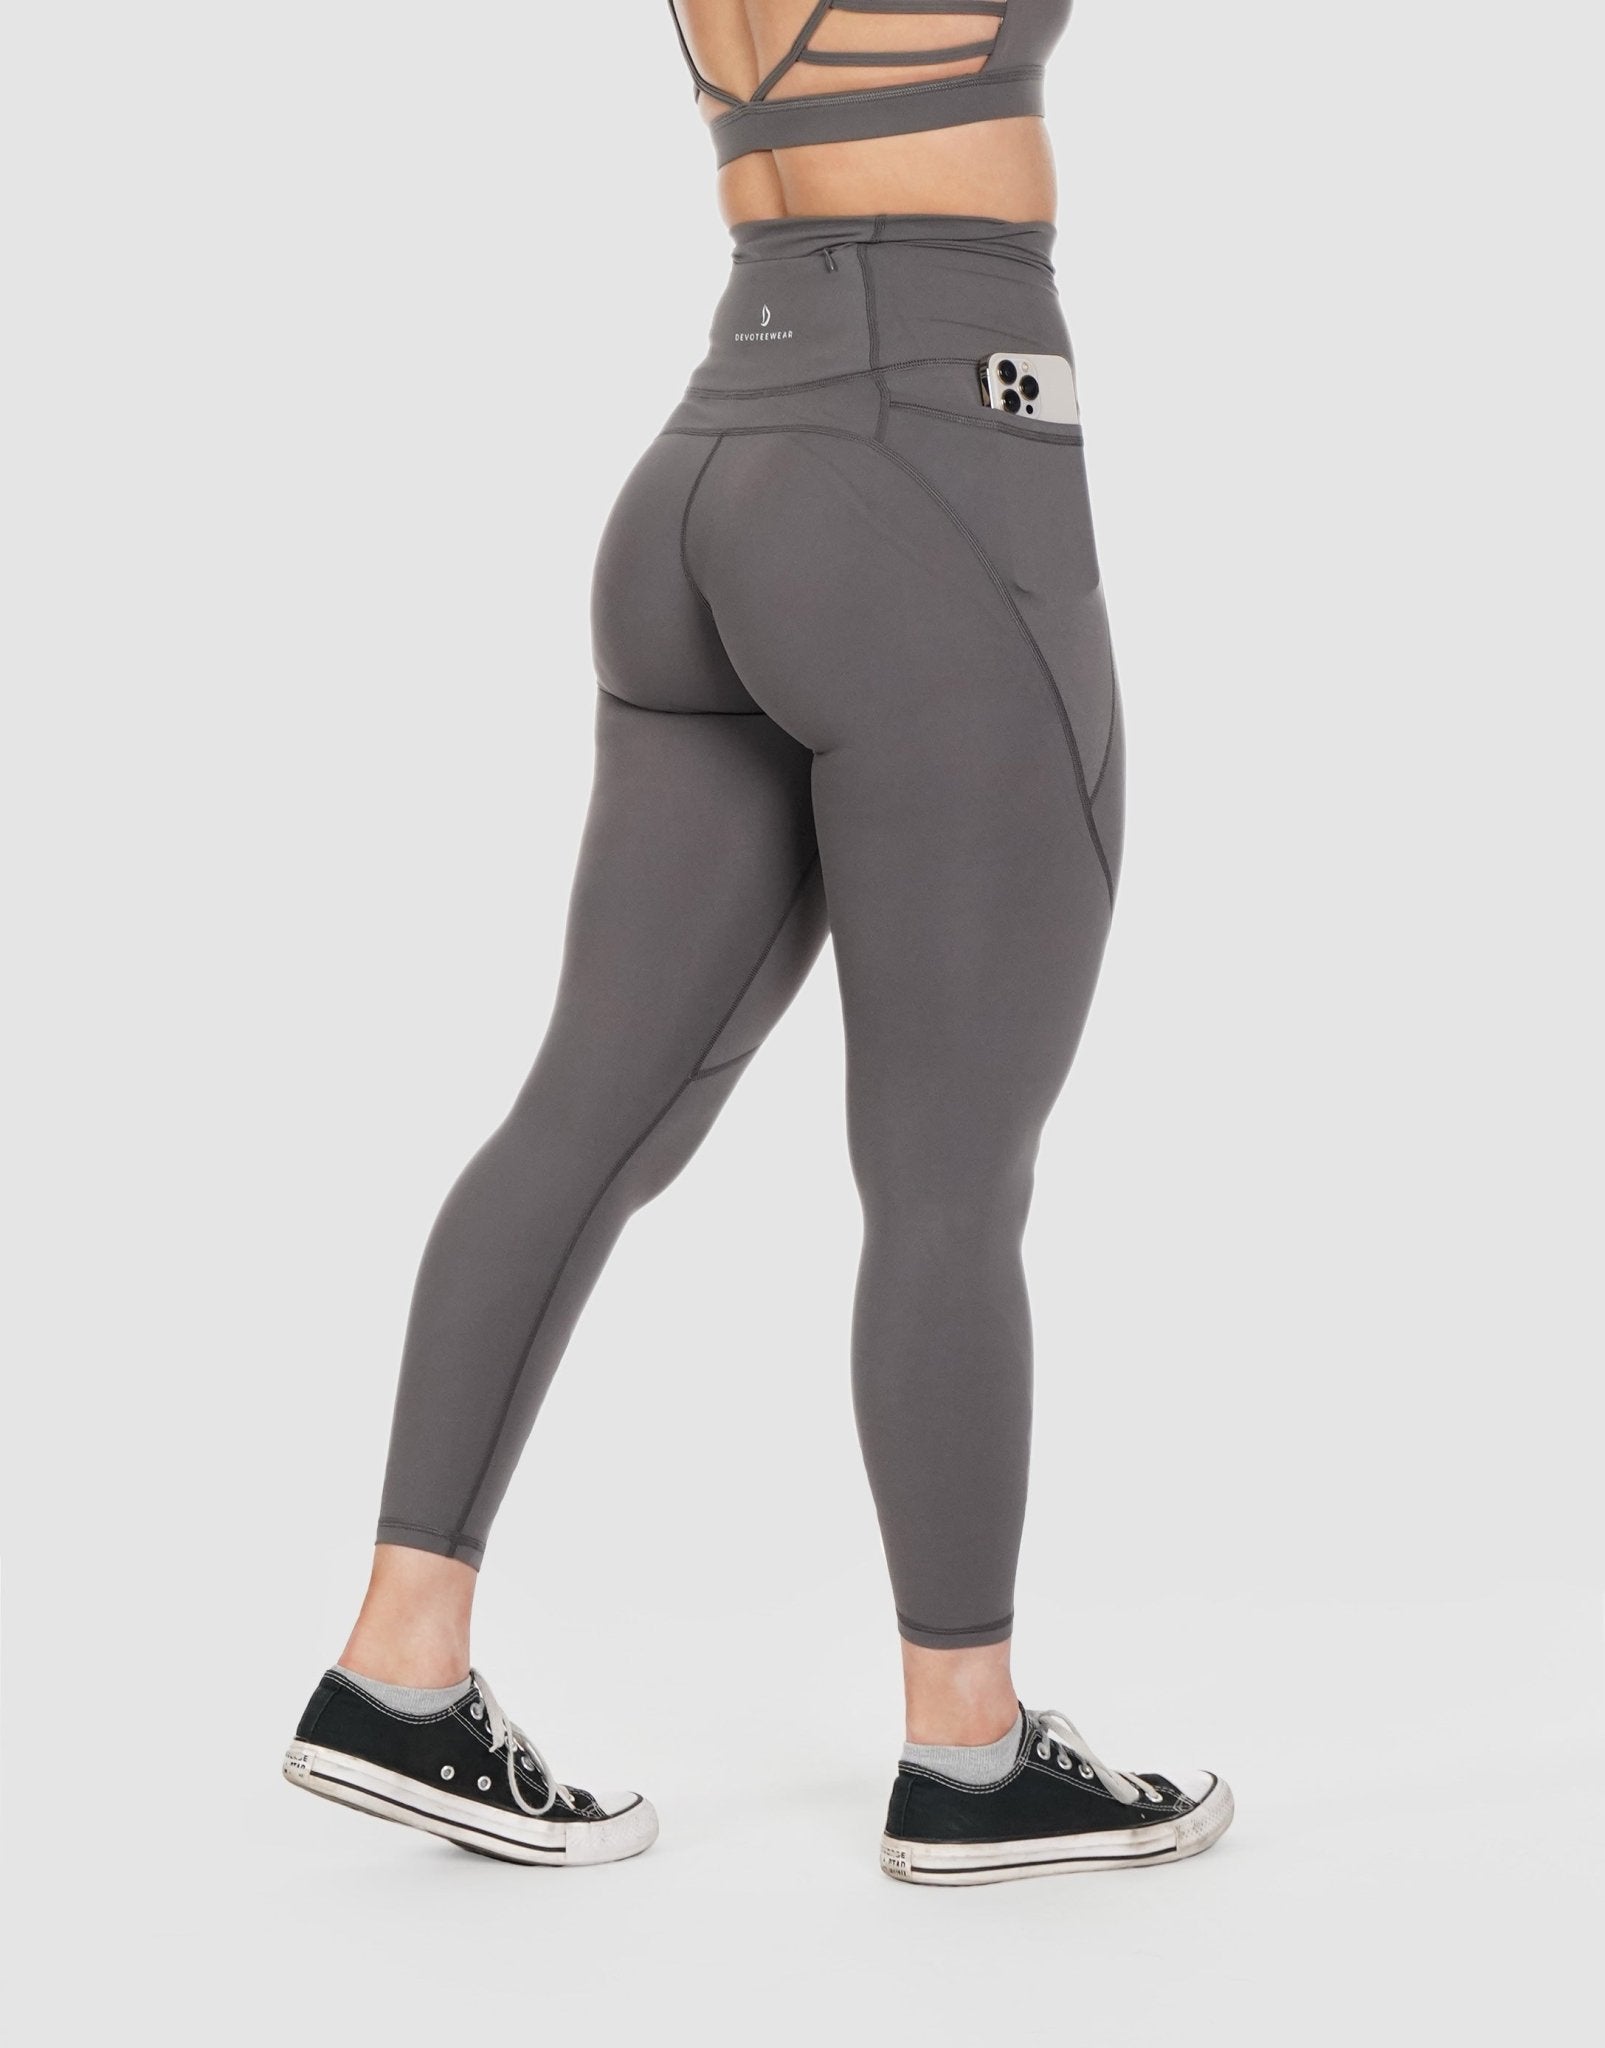 https://devoteewear.ca/cdn/shop/products/devoteewear-glow-pocket-legging-pocket-legging-843531.jpg?v=1703705451&width=1605